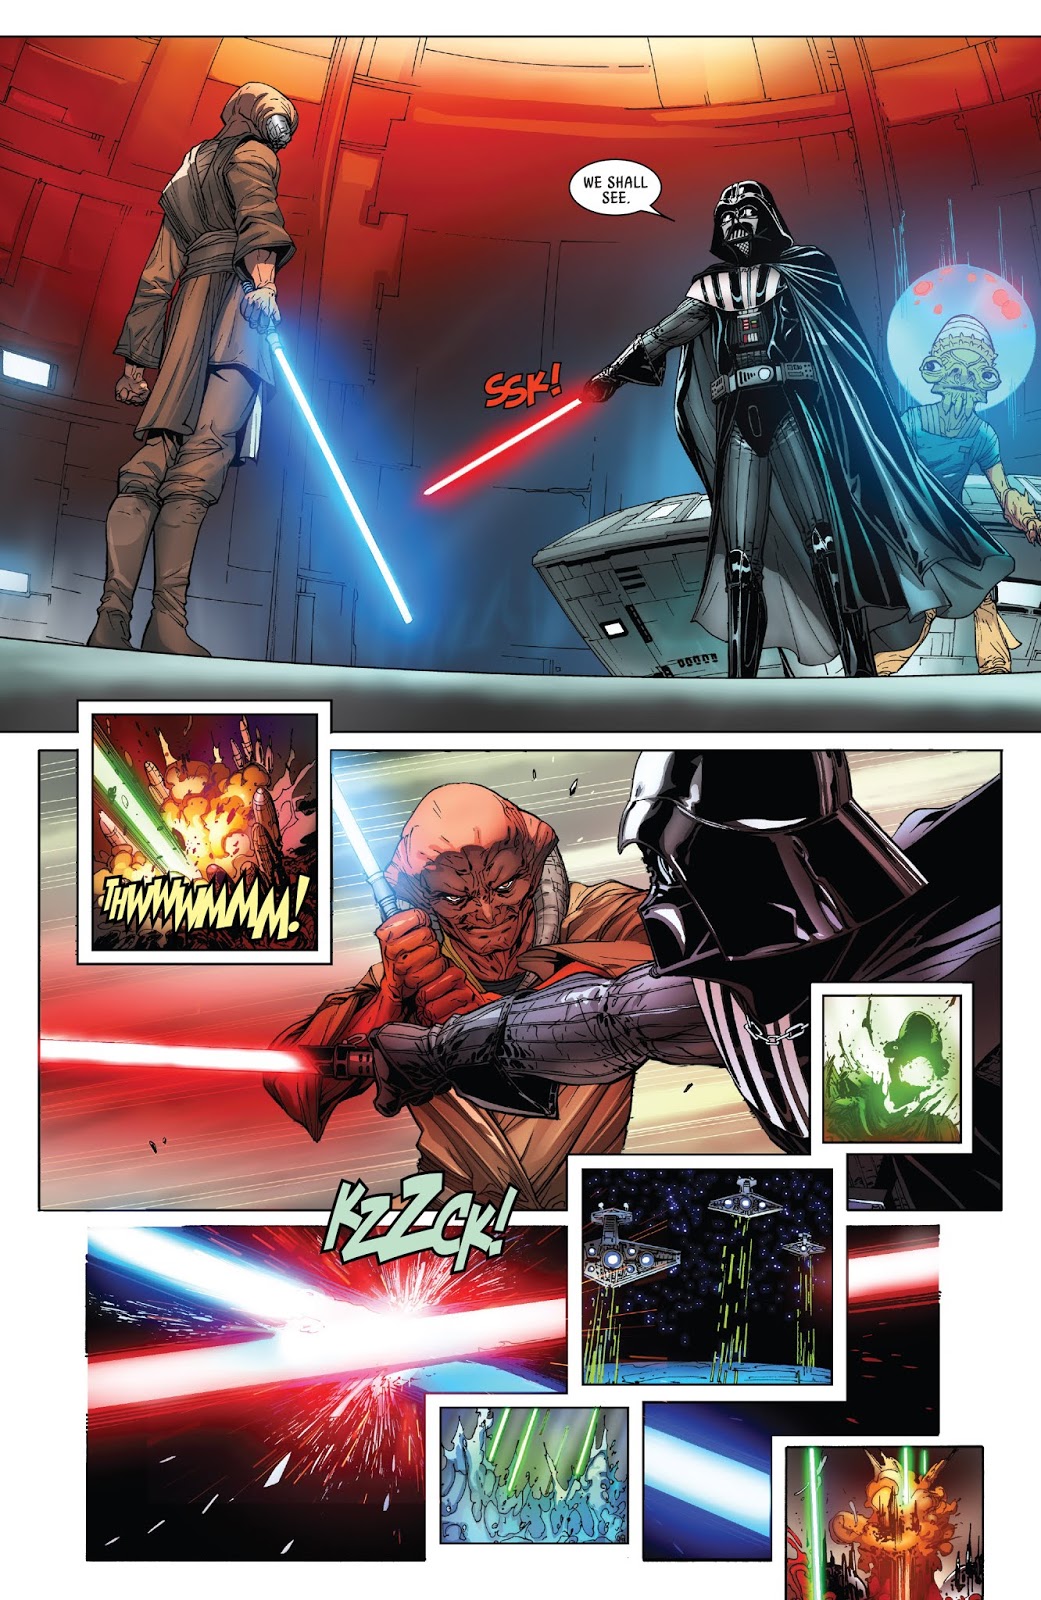 Darth Vader VS Ferren Barr